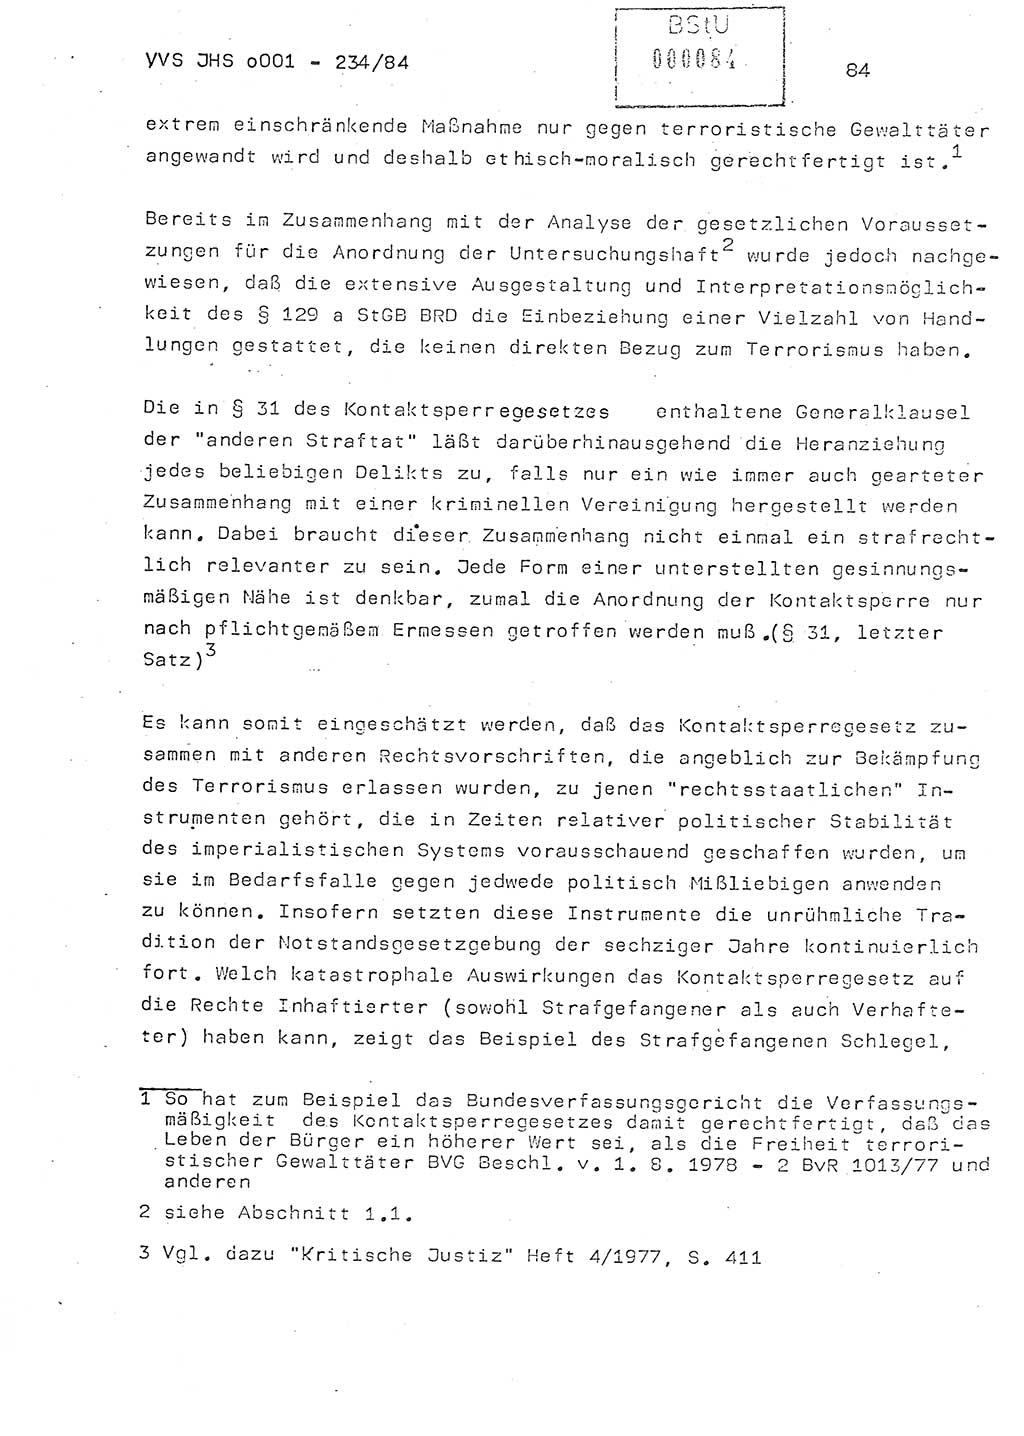 Dissertation Oberst Siegfried Rataizick (Abt. ⅩⅣ), Oberstleutnant Volkmar Heinz (Abt. ⅩⅣ), Oberstleutnant Werner Stein (HA Ⅸ), Hauptmann Heinz Conrad (JHS), Ministerium für Staatssicherheit (MfS) [Deutsche Demokratische Republik (DDR)], Juristische Hochschule (JHS), Vertrauliche Verschlußsache (VVS) o001-234/84, Potsdam 1984, Seite 84 (Diss. MfS DDR JHS VVS o001-234/84 1984, S. 84)